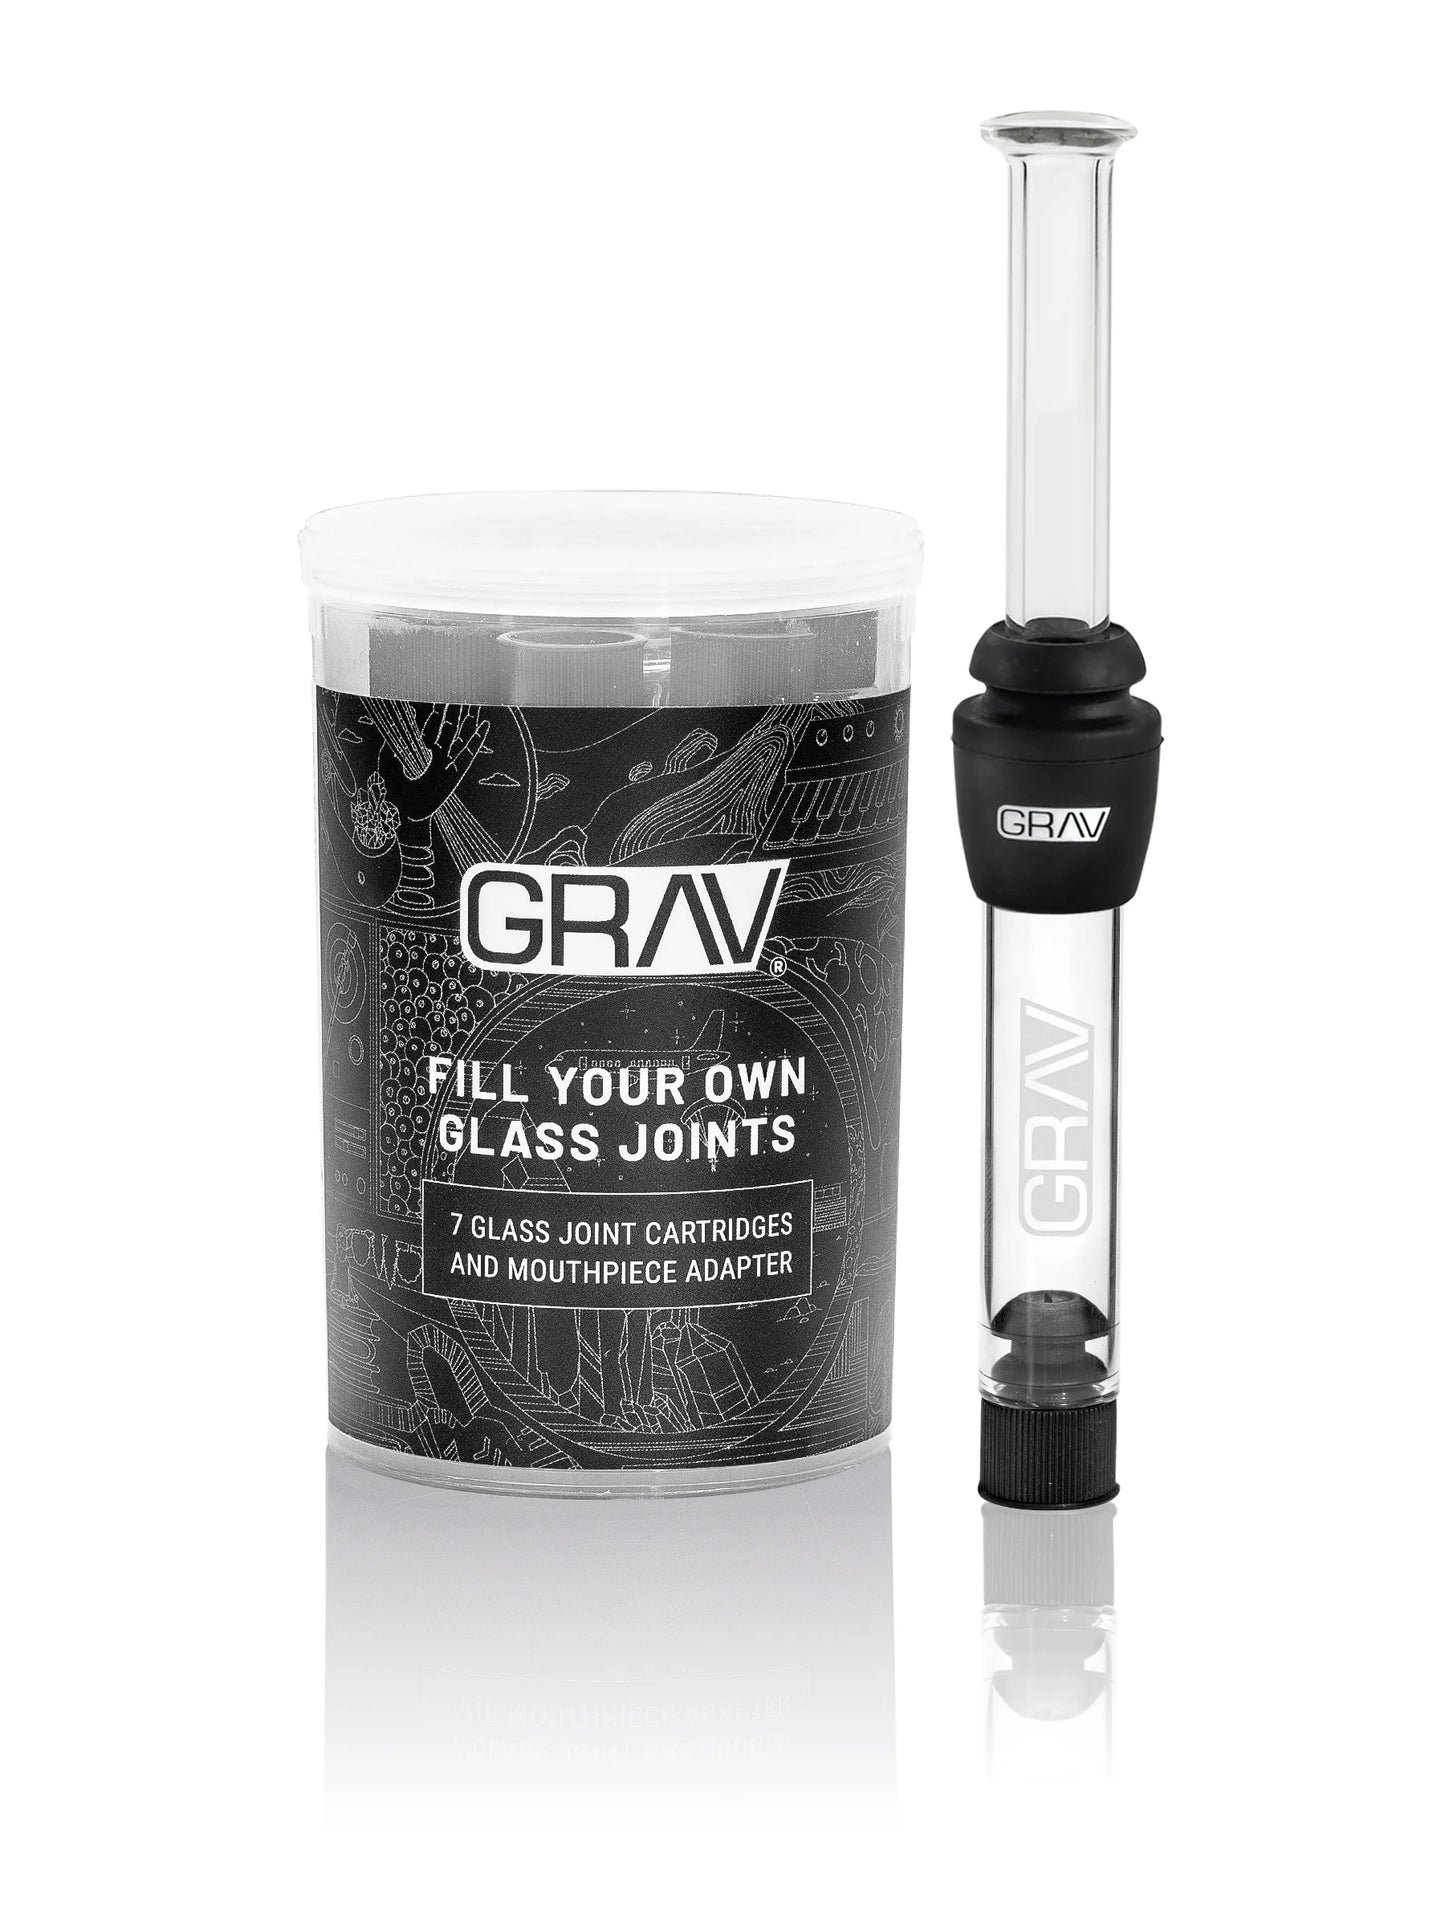 Grav glass joint/blunt kit